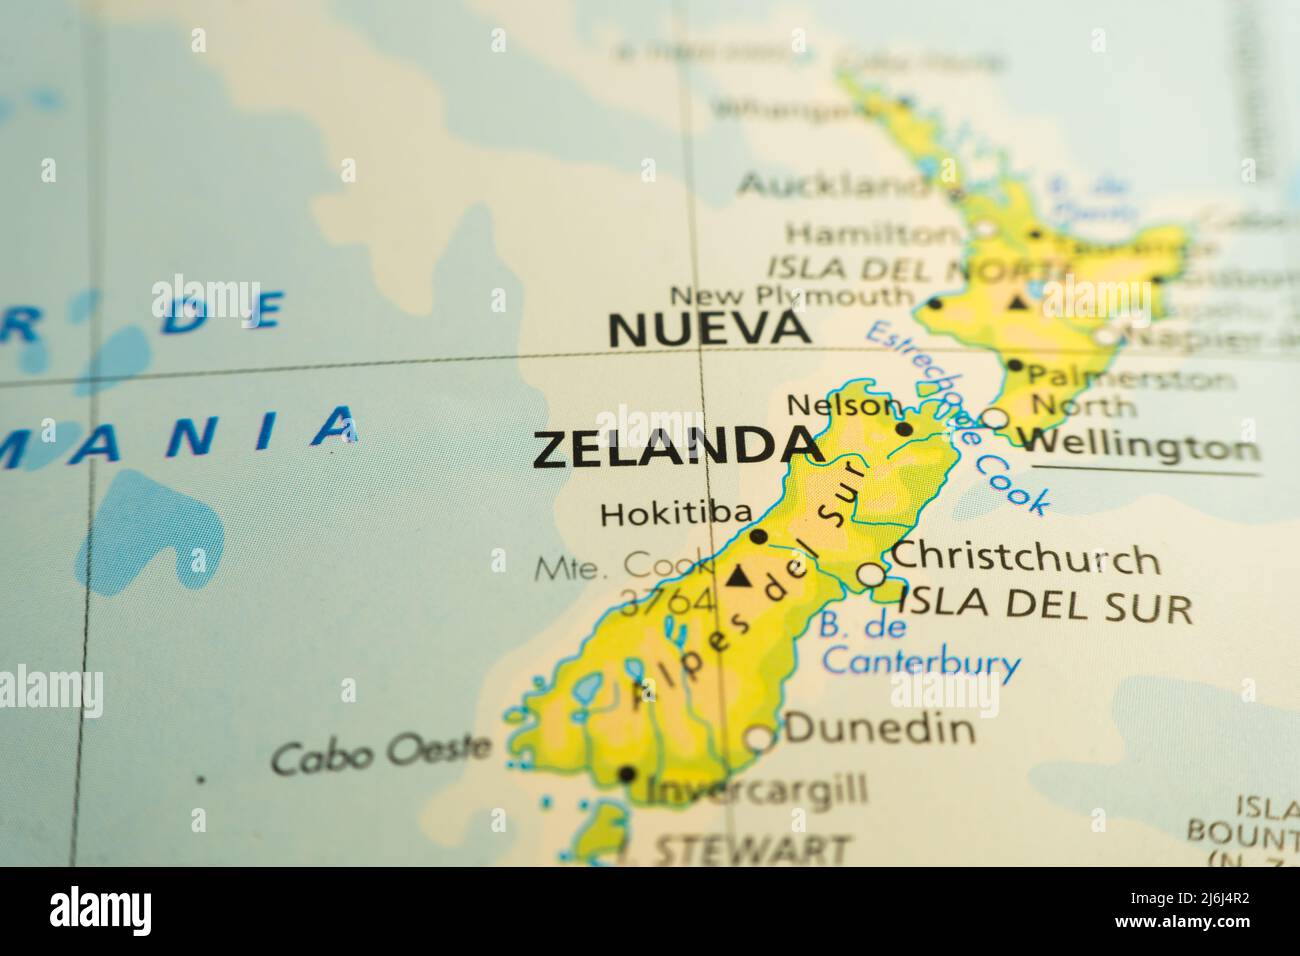 Carte orographique de l'archipel de la Nouvelle-Zélande dans le Pacifique Sud. Avec références en anglais. Concept de cartographie, de voyage, de géographie. Différenciation Banque D'Images